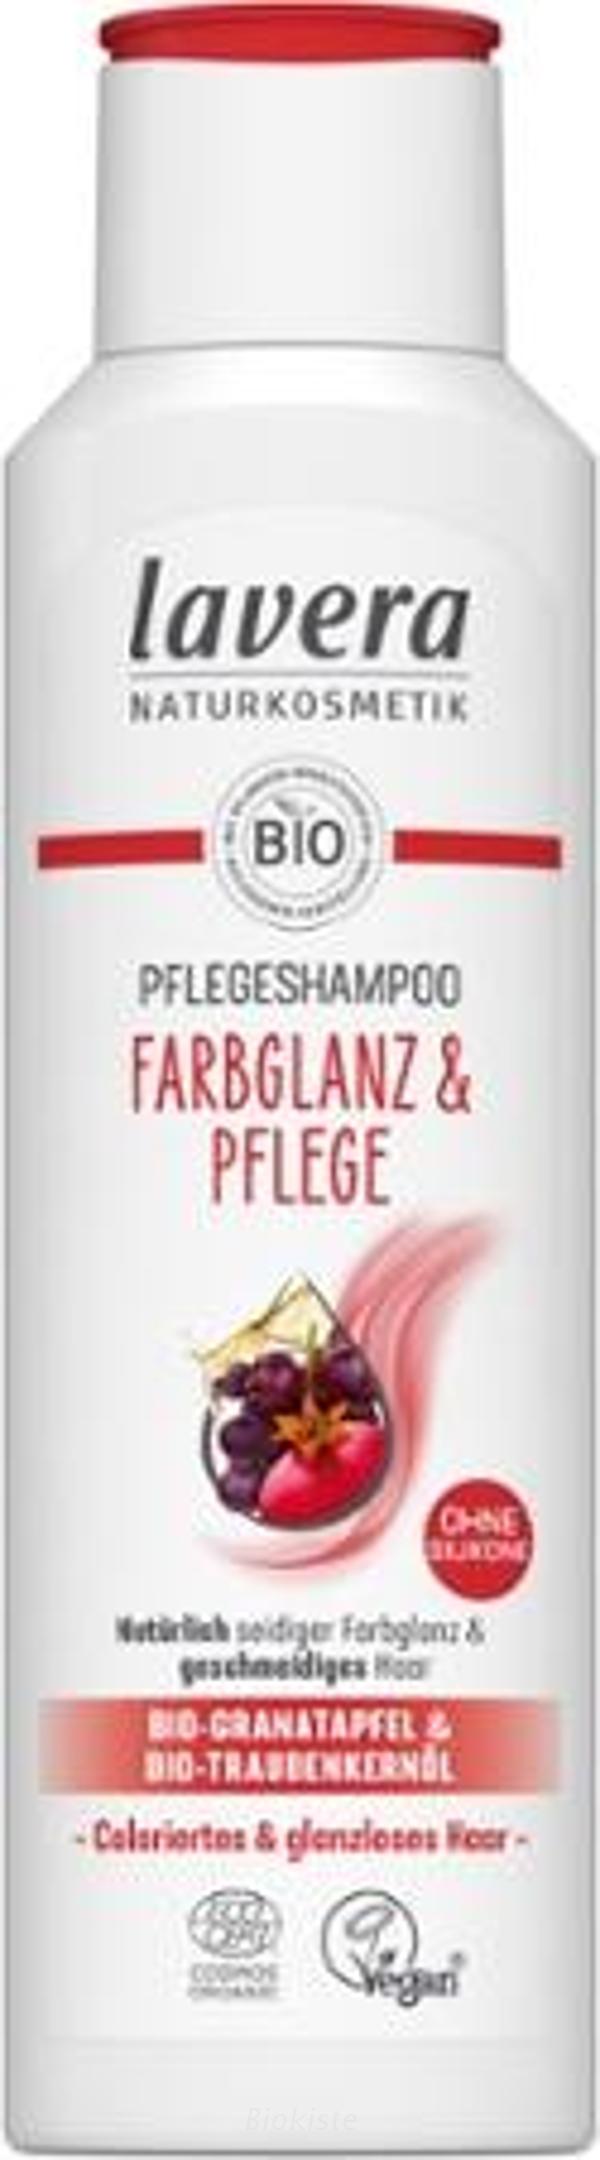 Produktfoto zu Shampoo Farbglanz und Pflege 250 ml